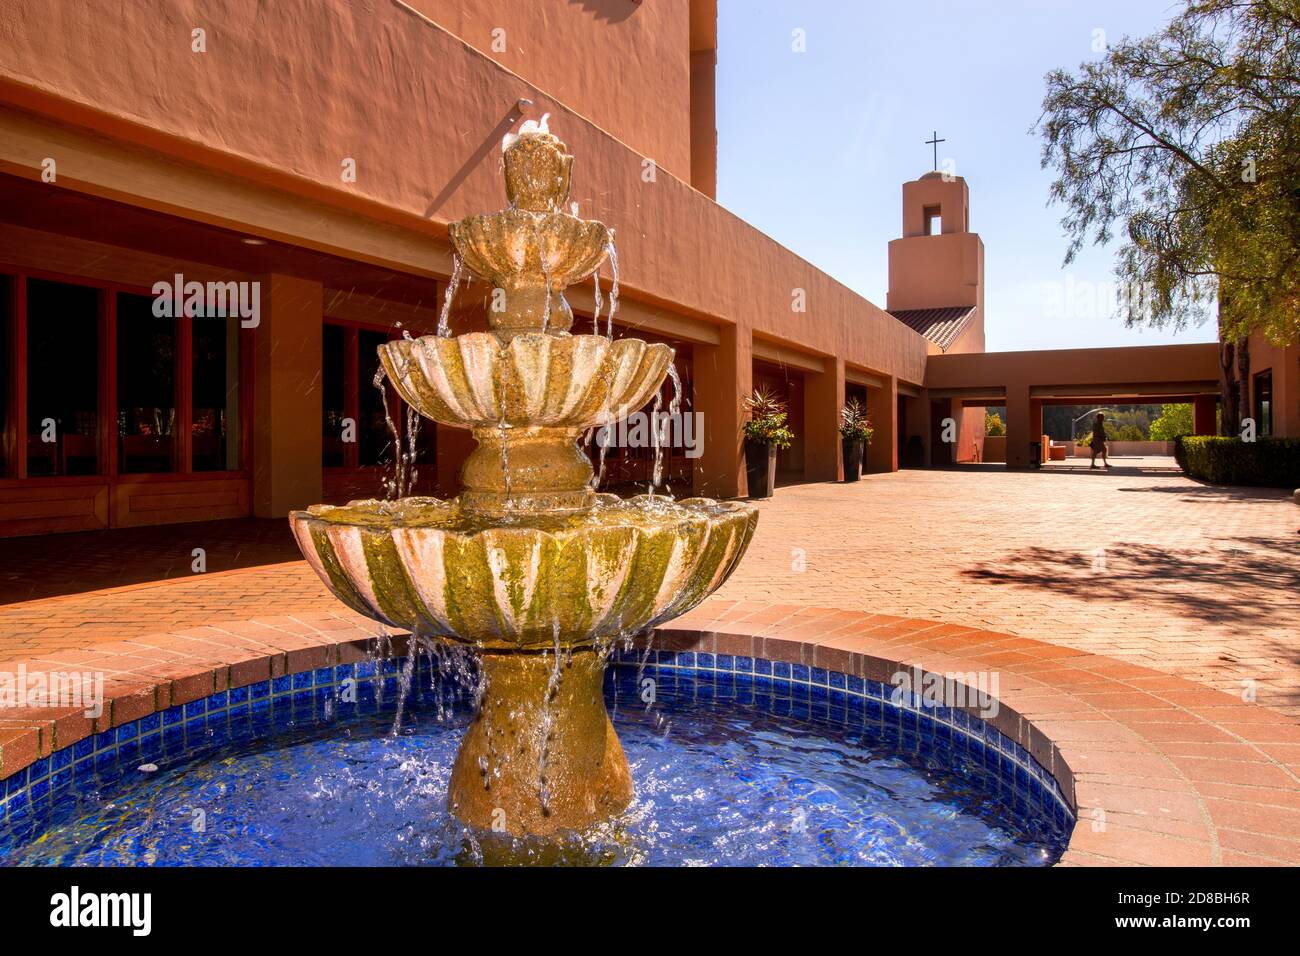 Une fontaine fraîche bulobait dans le soleil de l'après-midi dans la cour d'une église catholique dans le sud de la Californie. Banque D'Images